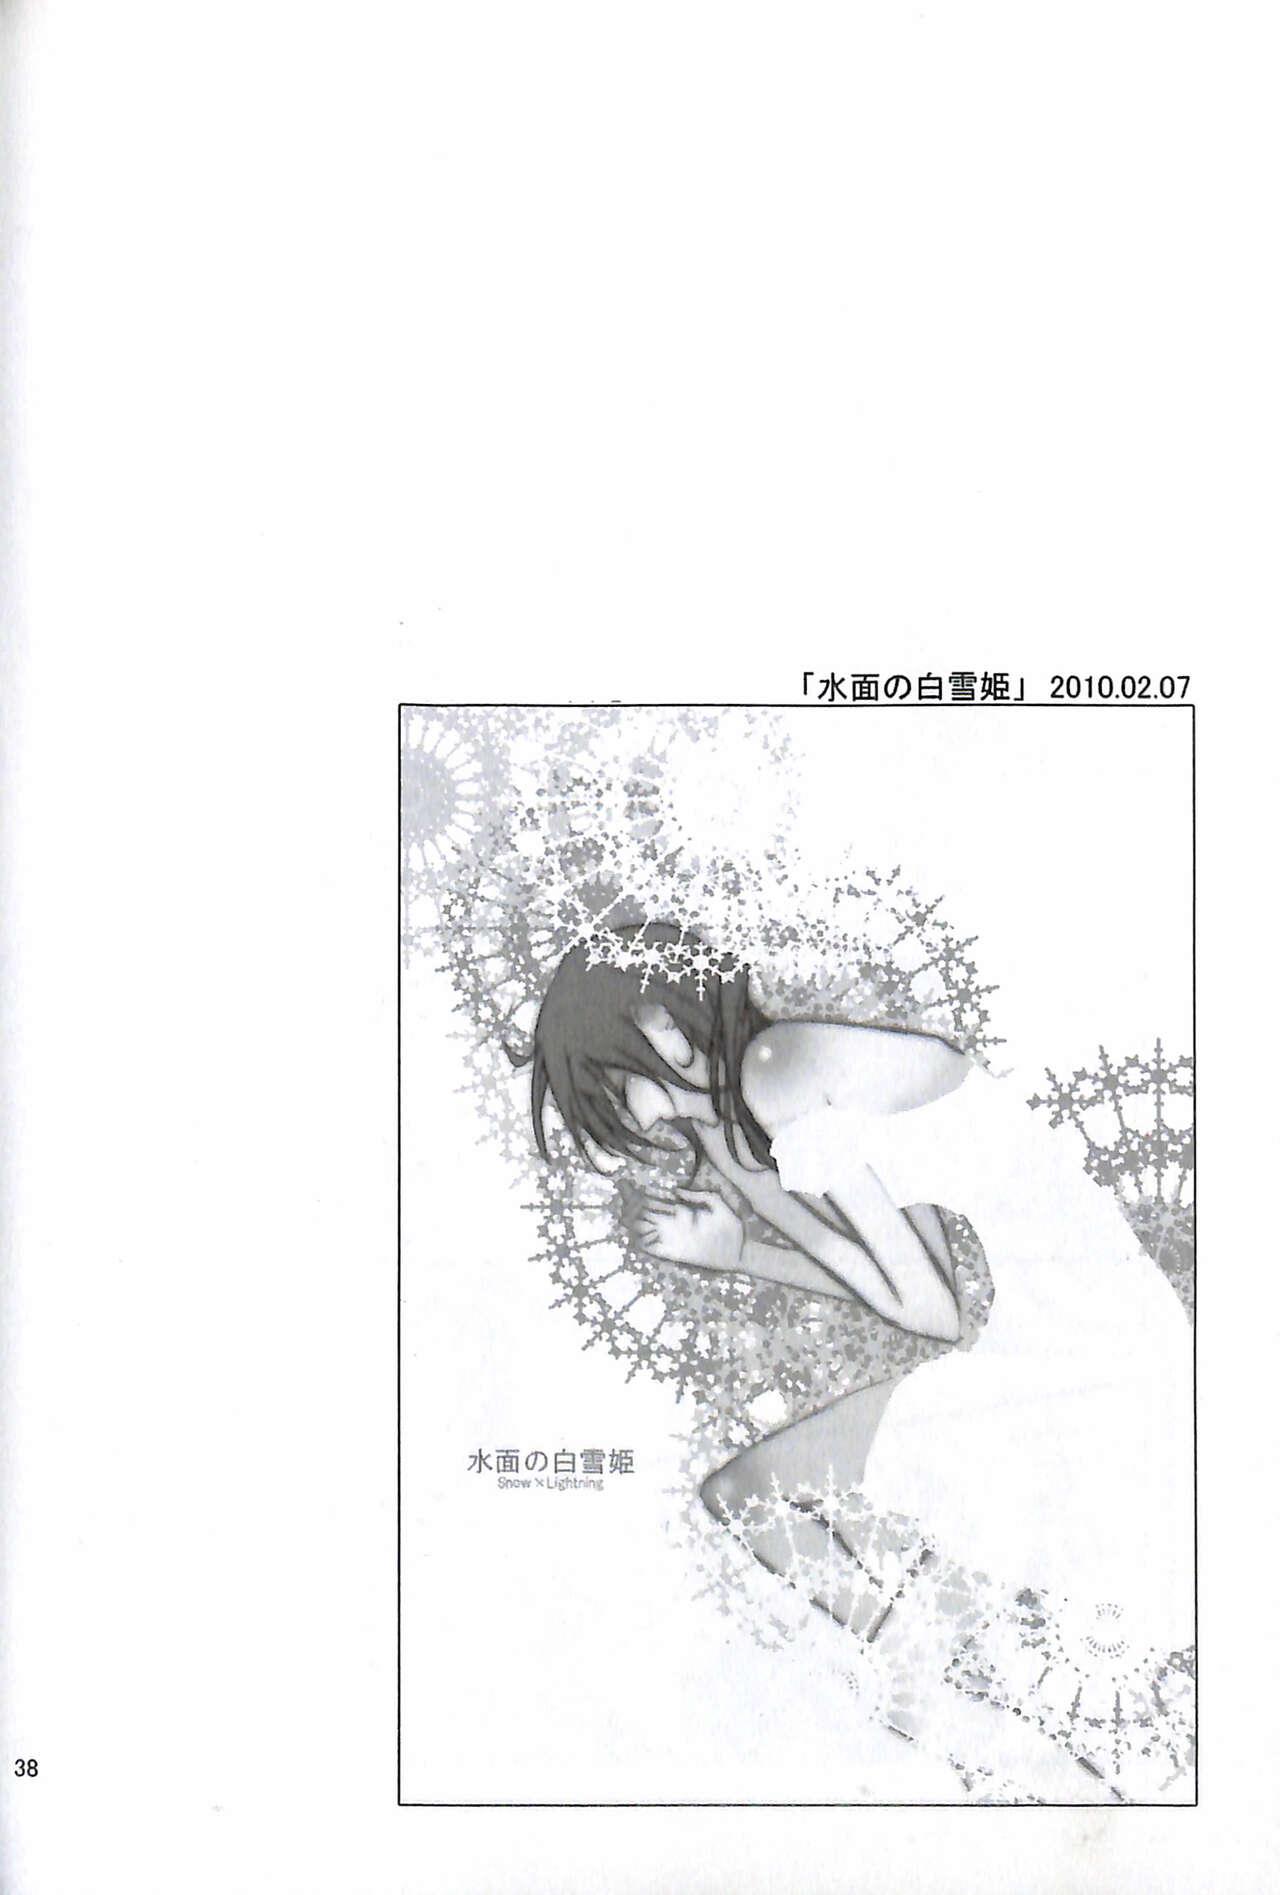 Final Fantasy 13 Fan book 39